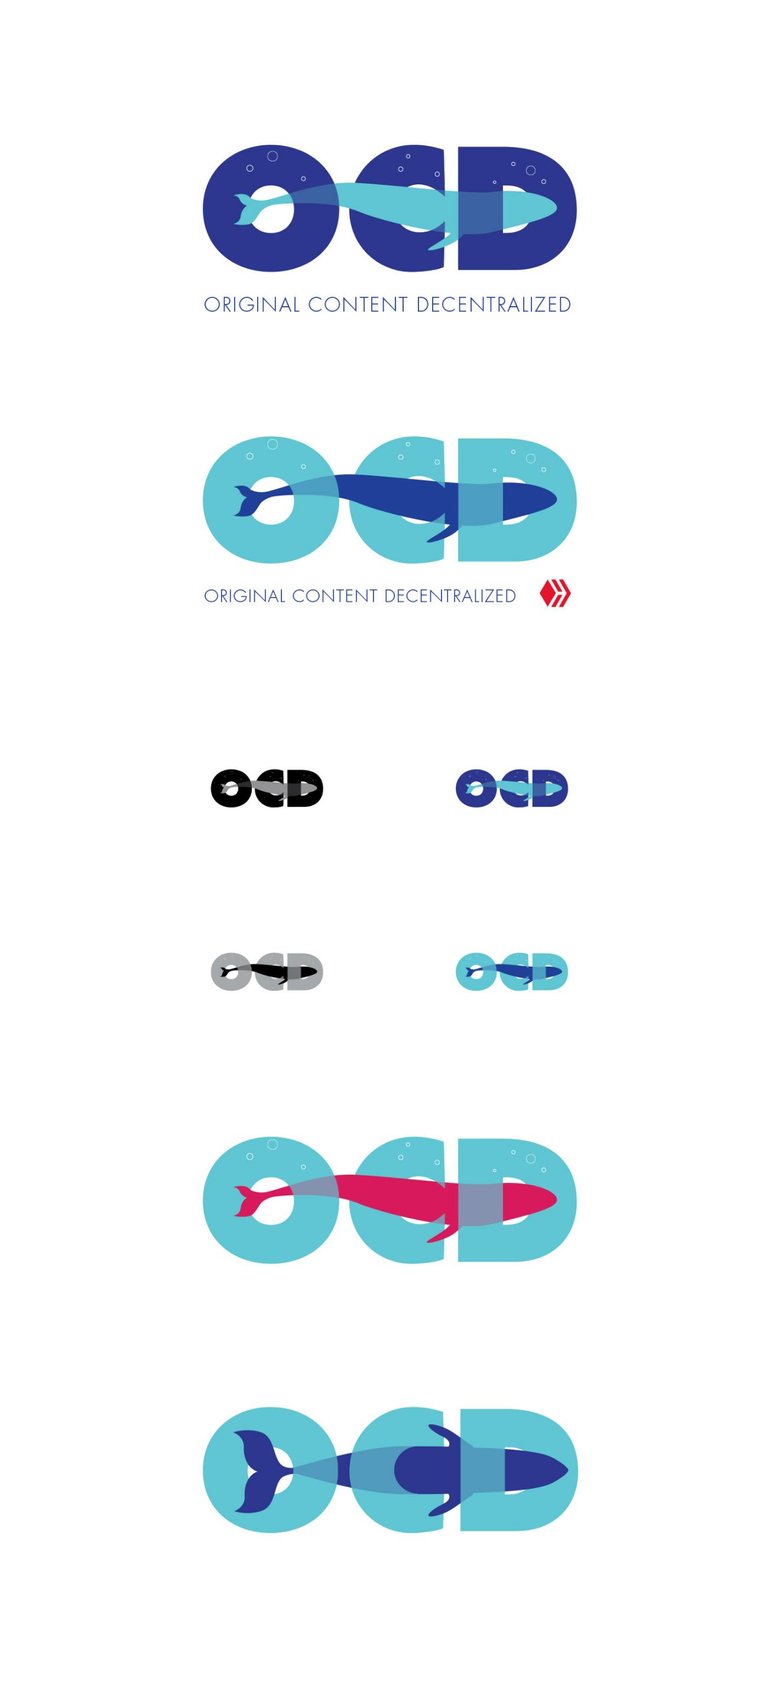 ocd logos third batch.jpg